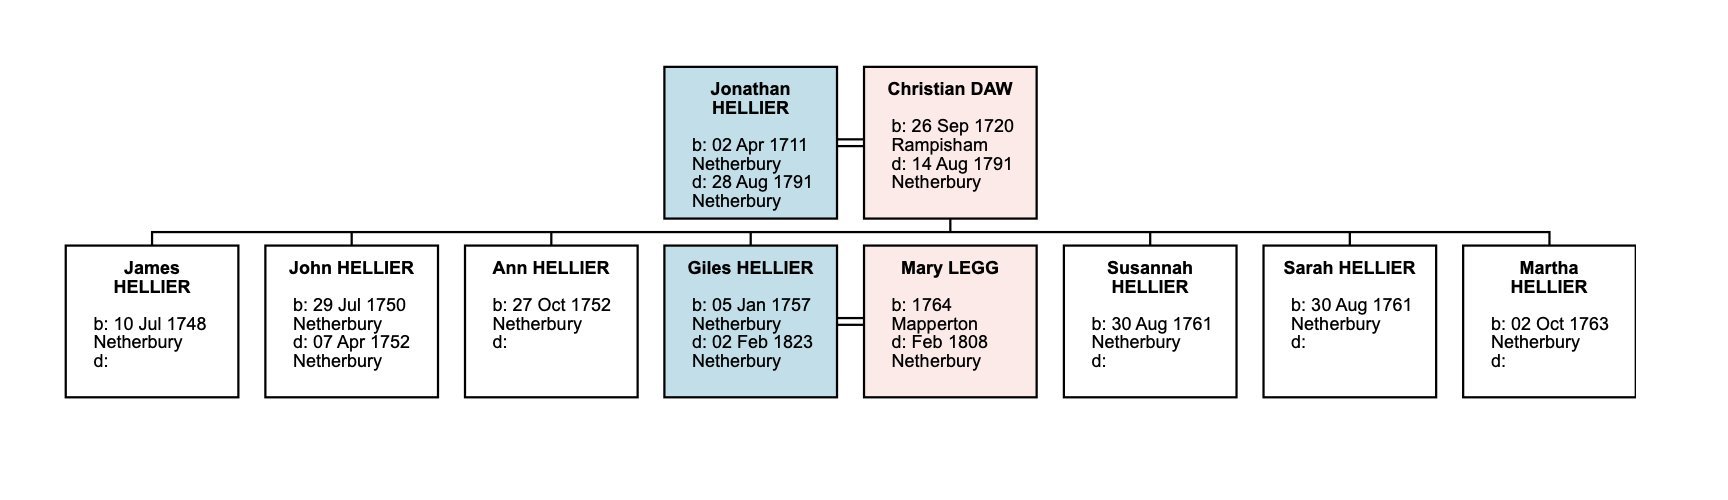 Jonatham Hellier family